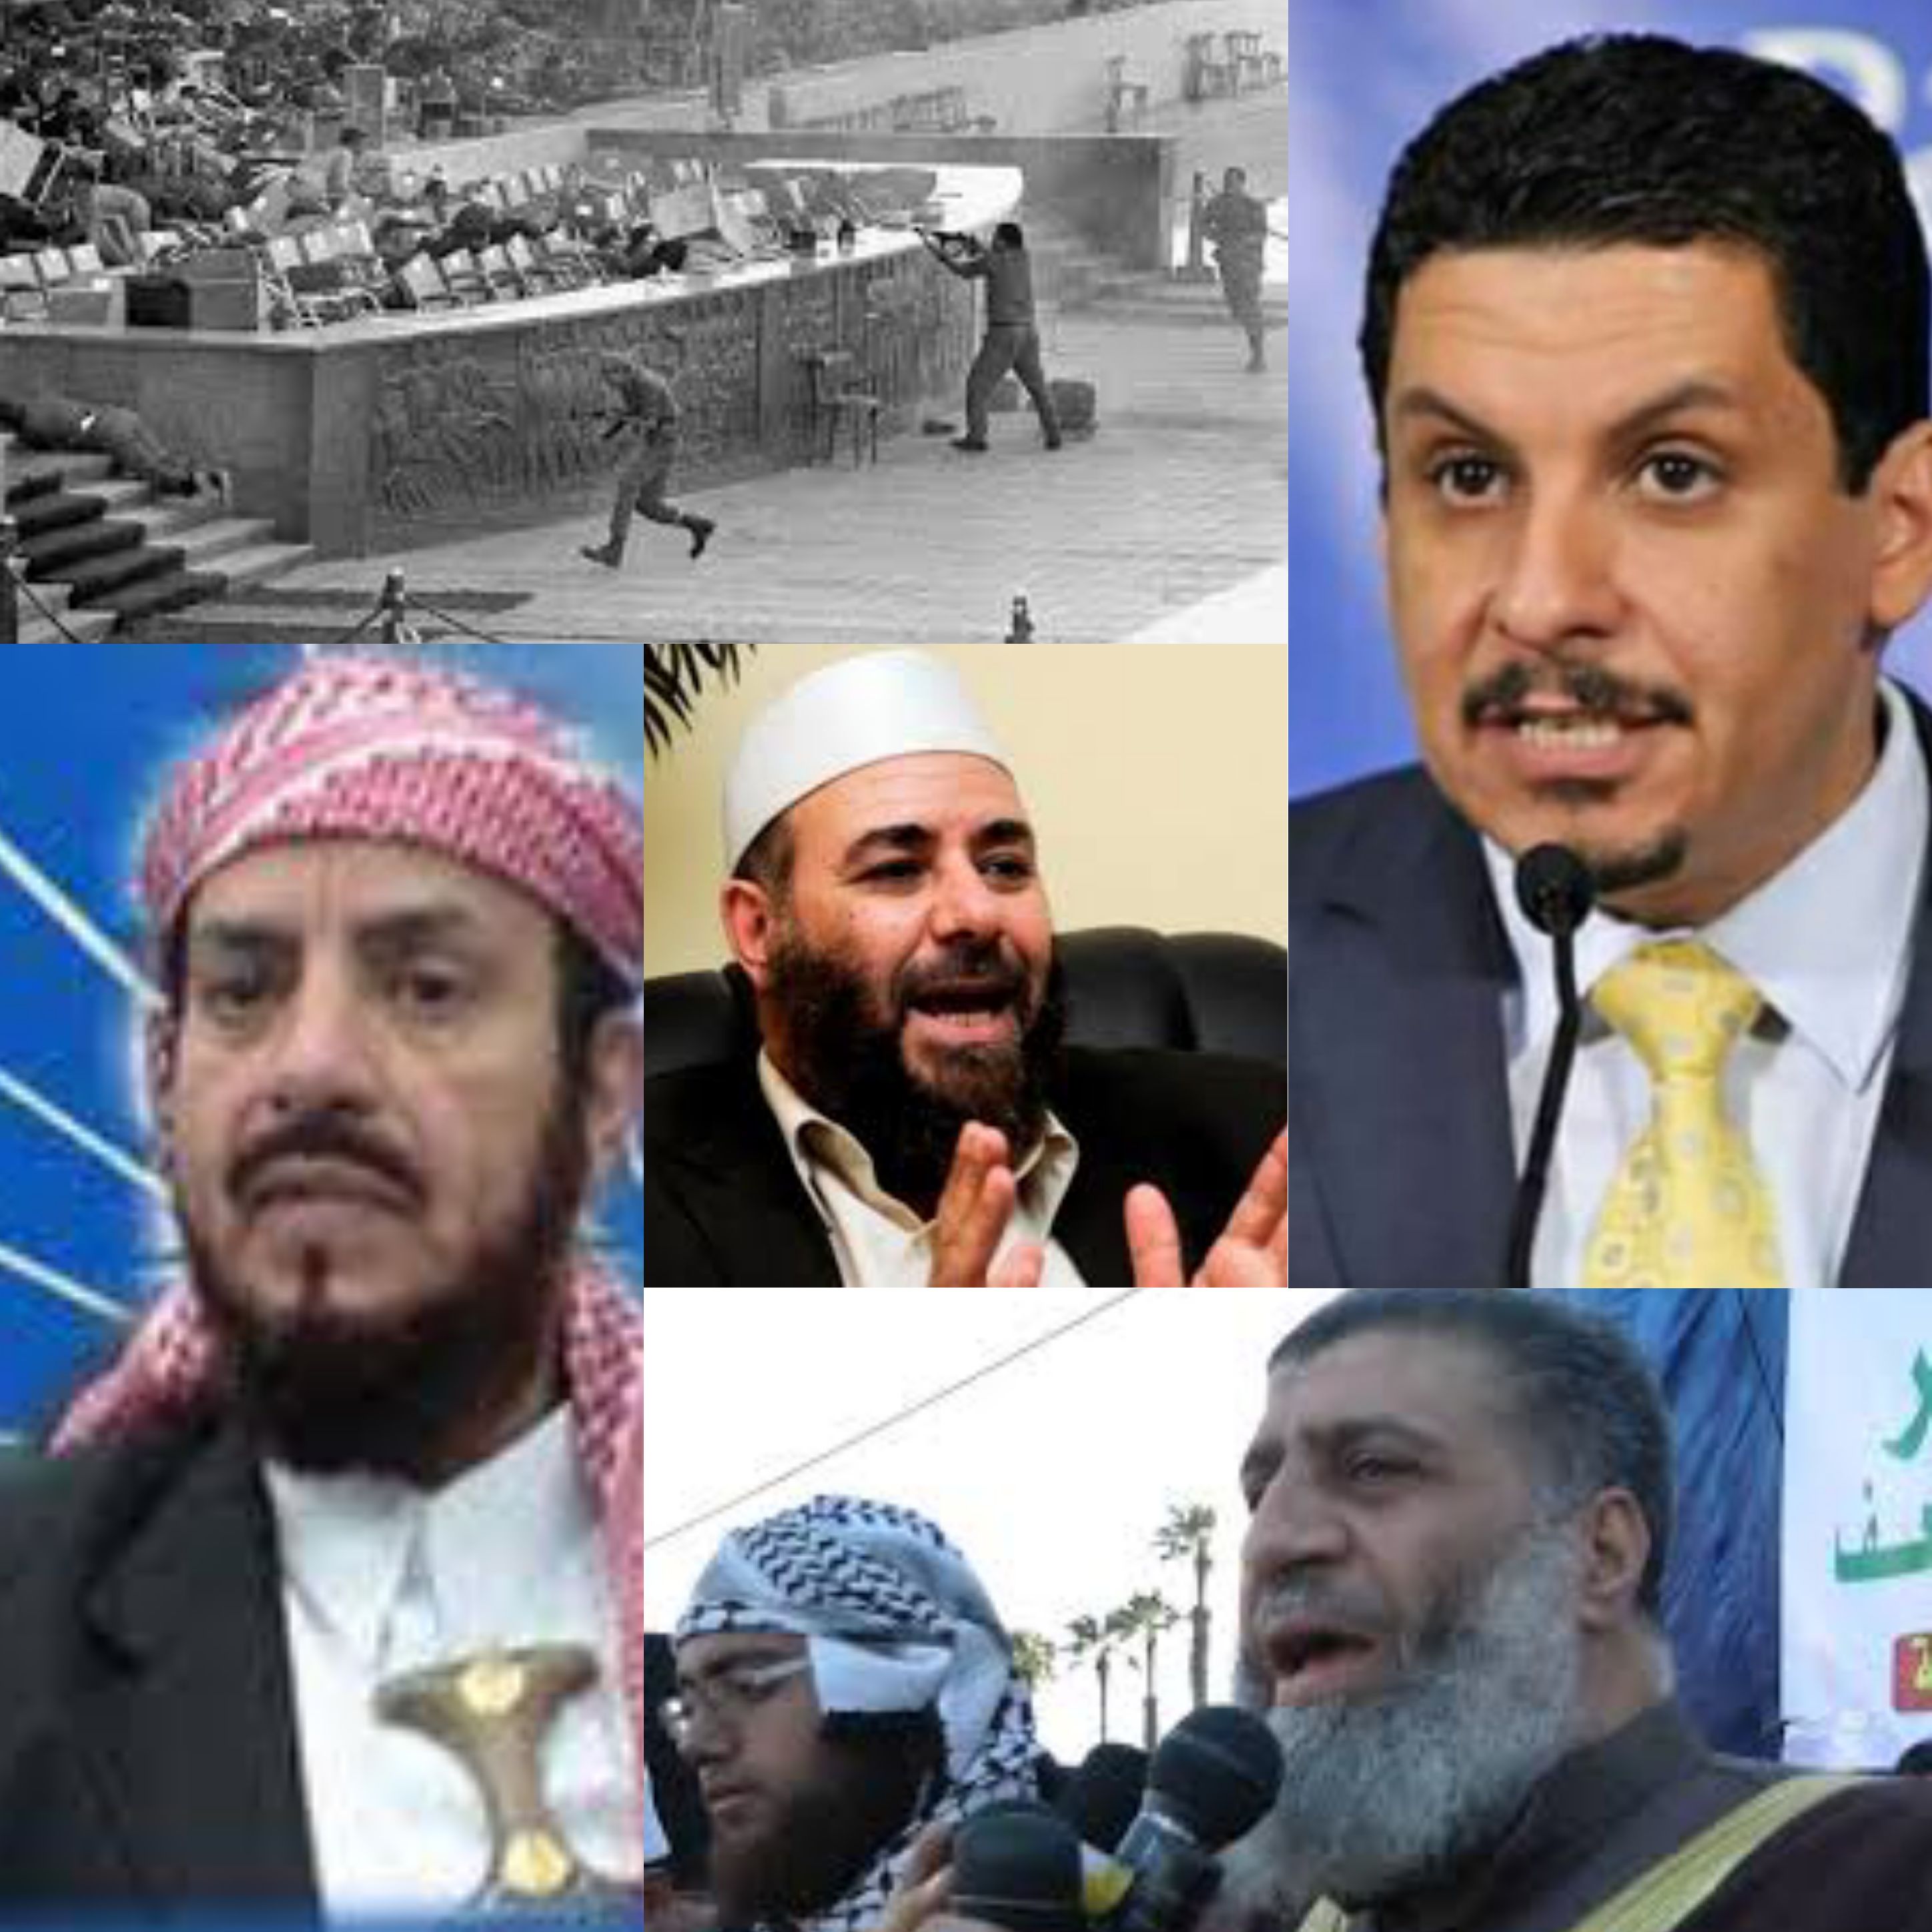 خطير جدا وزير الخارجية اليمني يمنح قتلة الرئيس المصري أنور السادات جوازات دبلوماسية يمنية